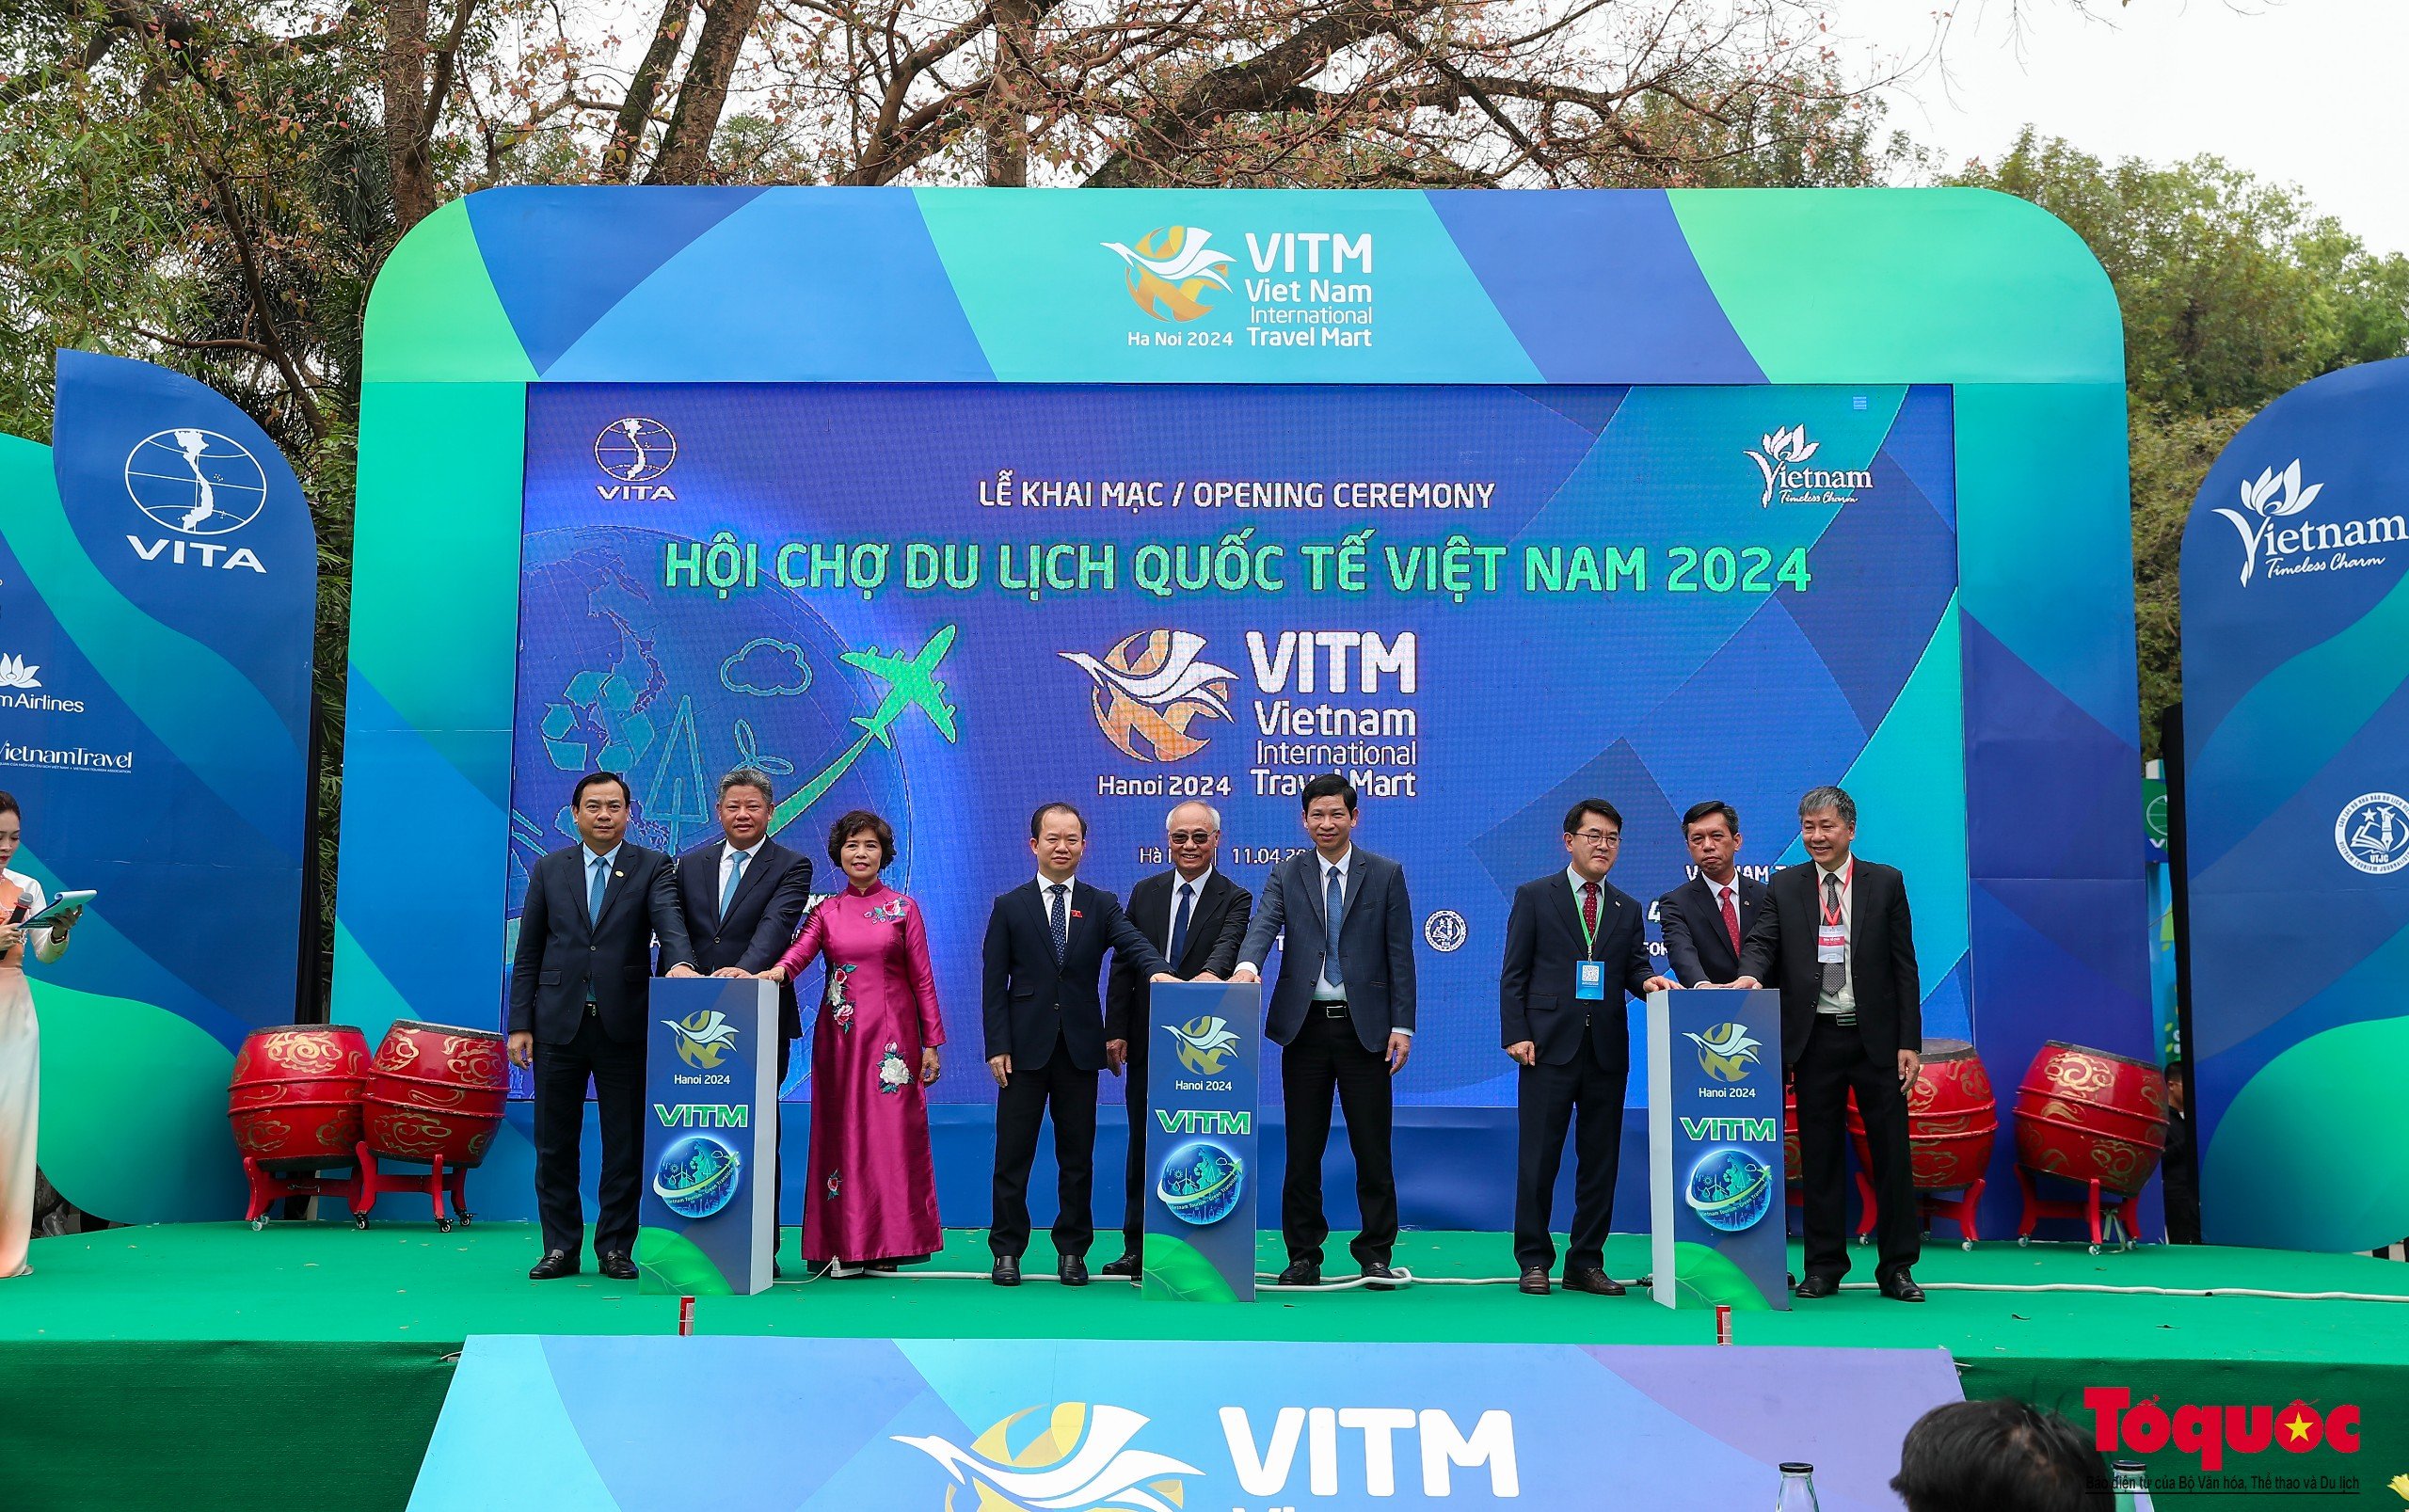 Khai mạc VITM 2024: "Du lịch Việt Nam – Chuyển đổi xanh để phát triển bền vững" - Ảnh 3.